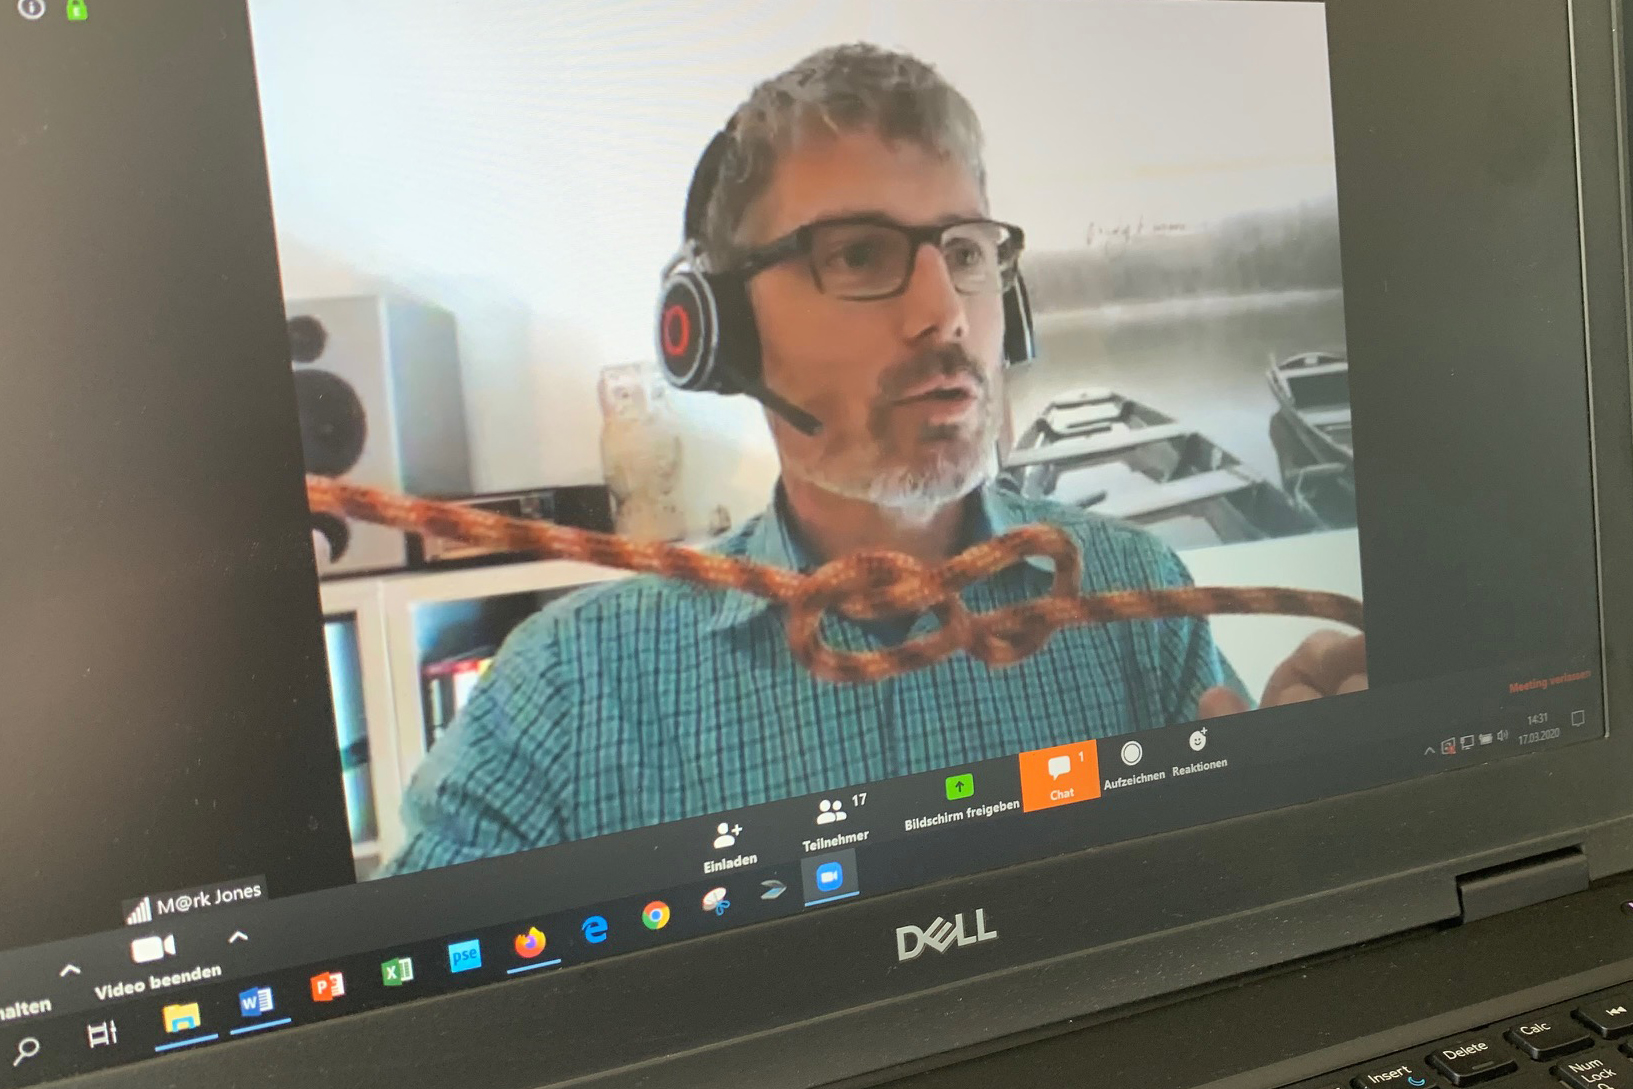 Mark Jones, Experte für digitales und virtuelles Lernen bei der Lernwerkstatt Olten zeigt, dass selbst Knotentechnik virtuell gelehrt werden kann.